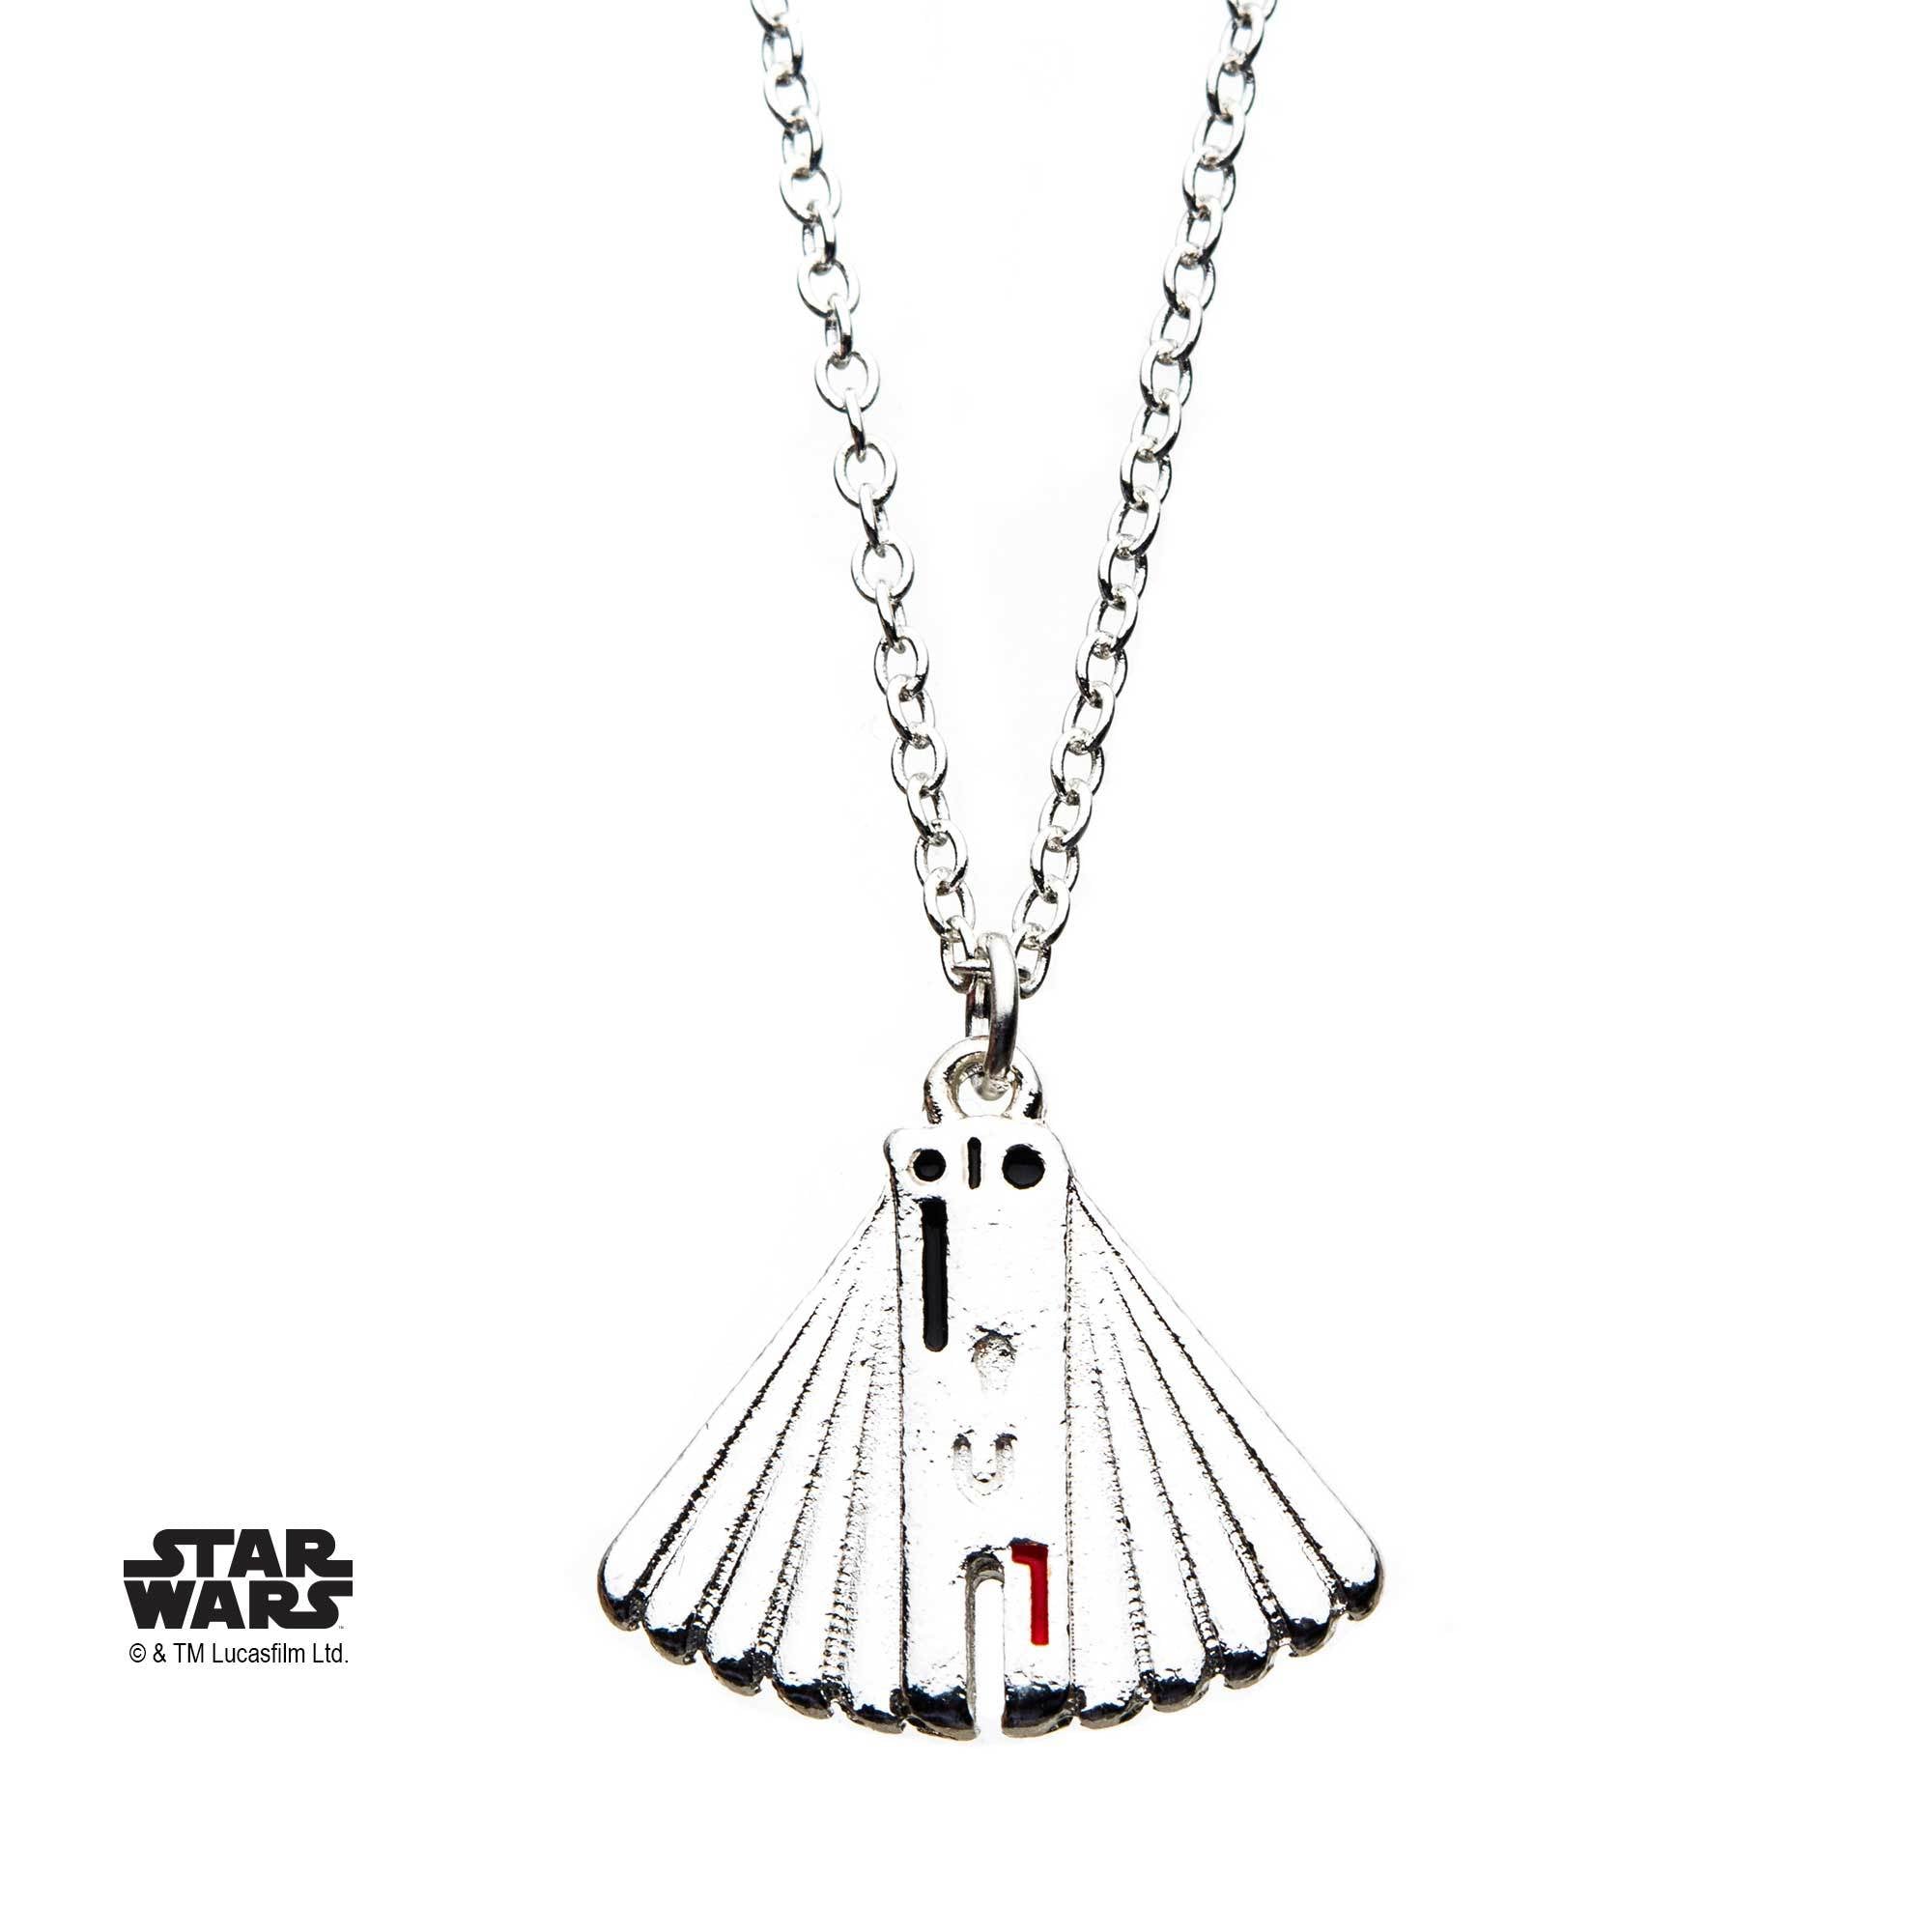 Star Wars Enfys Nest Fan Pendant Necklace